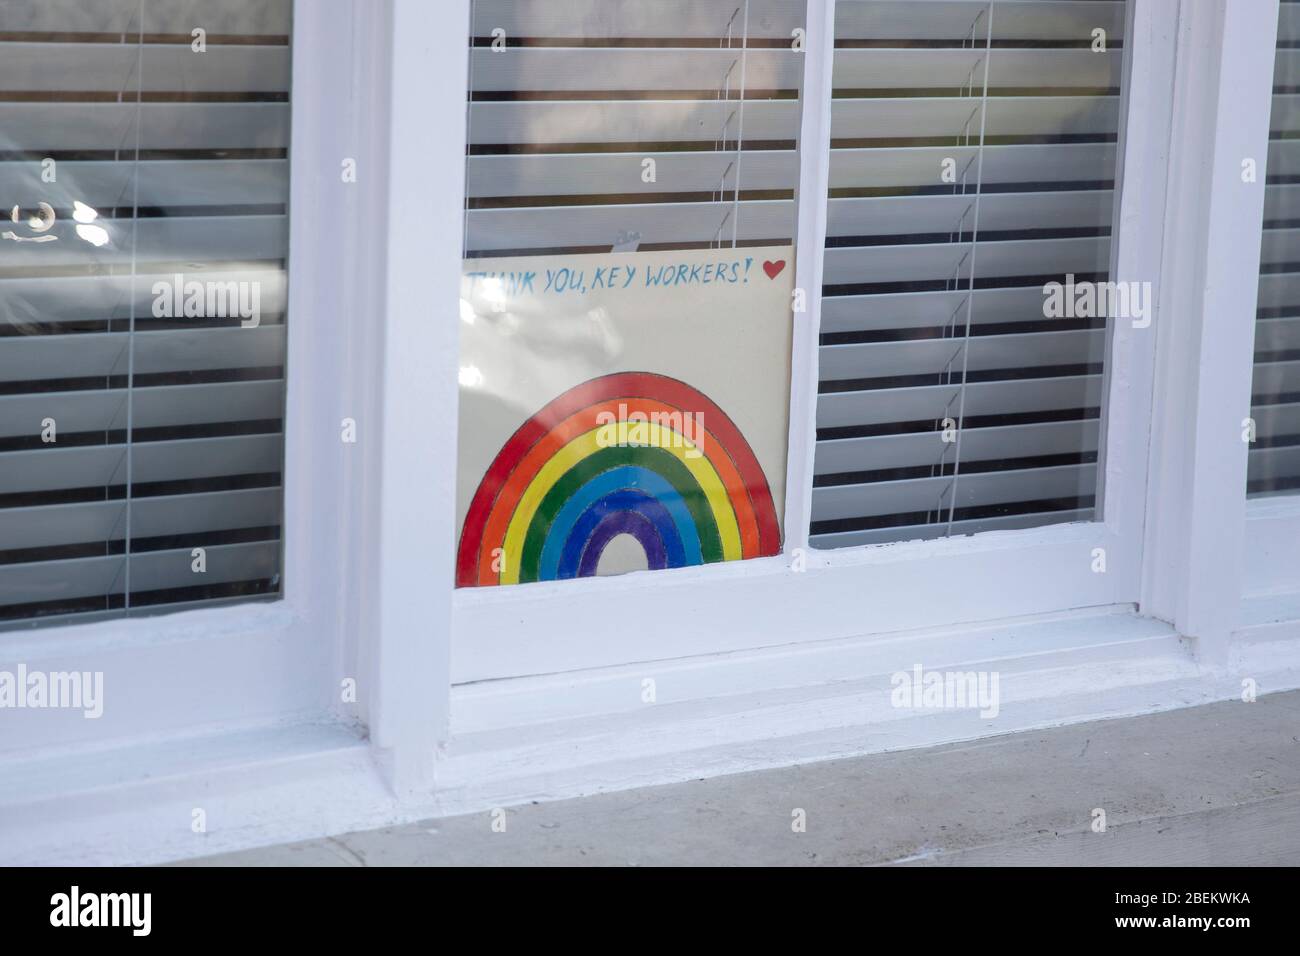 Danke Schlüsselarbeiter Regenbogen-Nachricht in einem Fenster während des Coronavirus Ausbruch Stockfoto